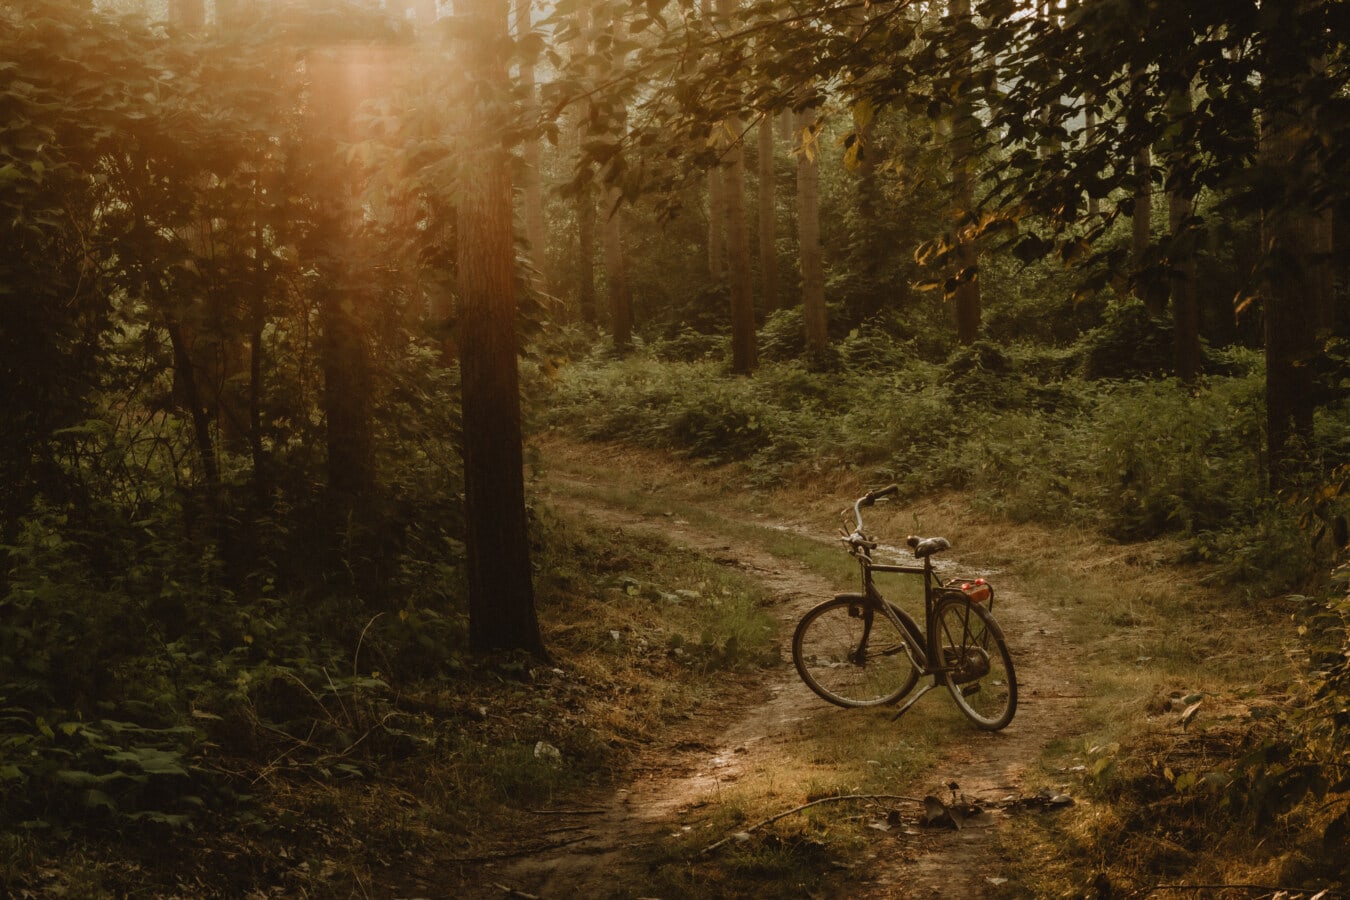 strada forestale, retroilluminato, tramonto, strada, biciclette, legno, albero, orizzontale, luce, sentiero